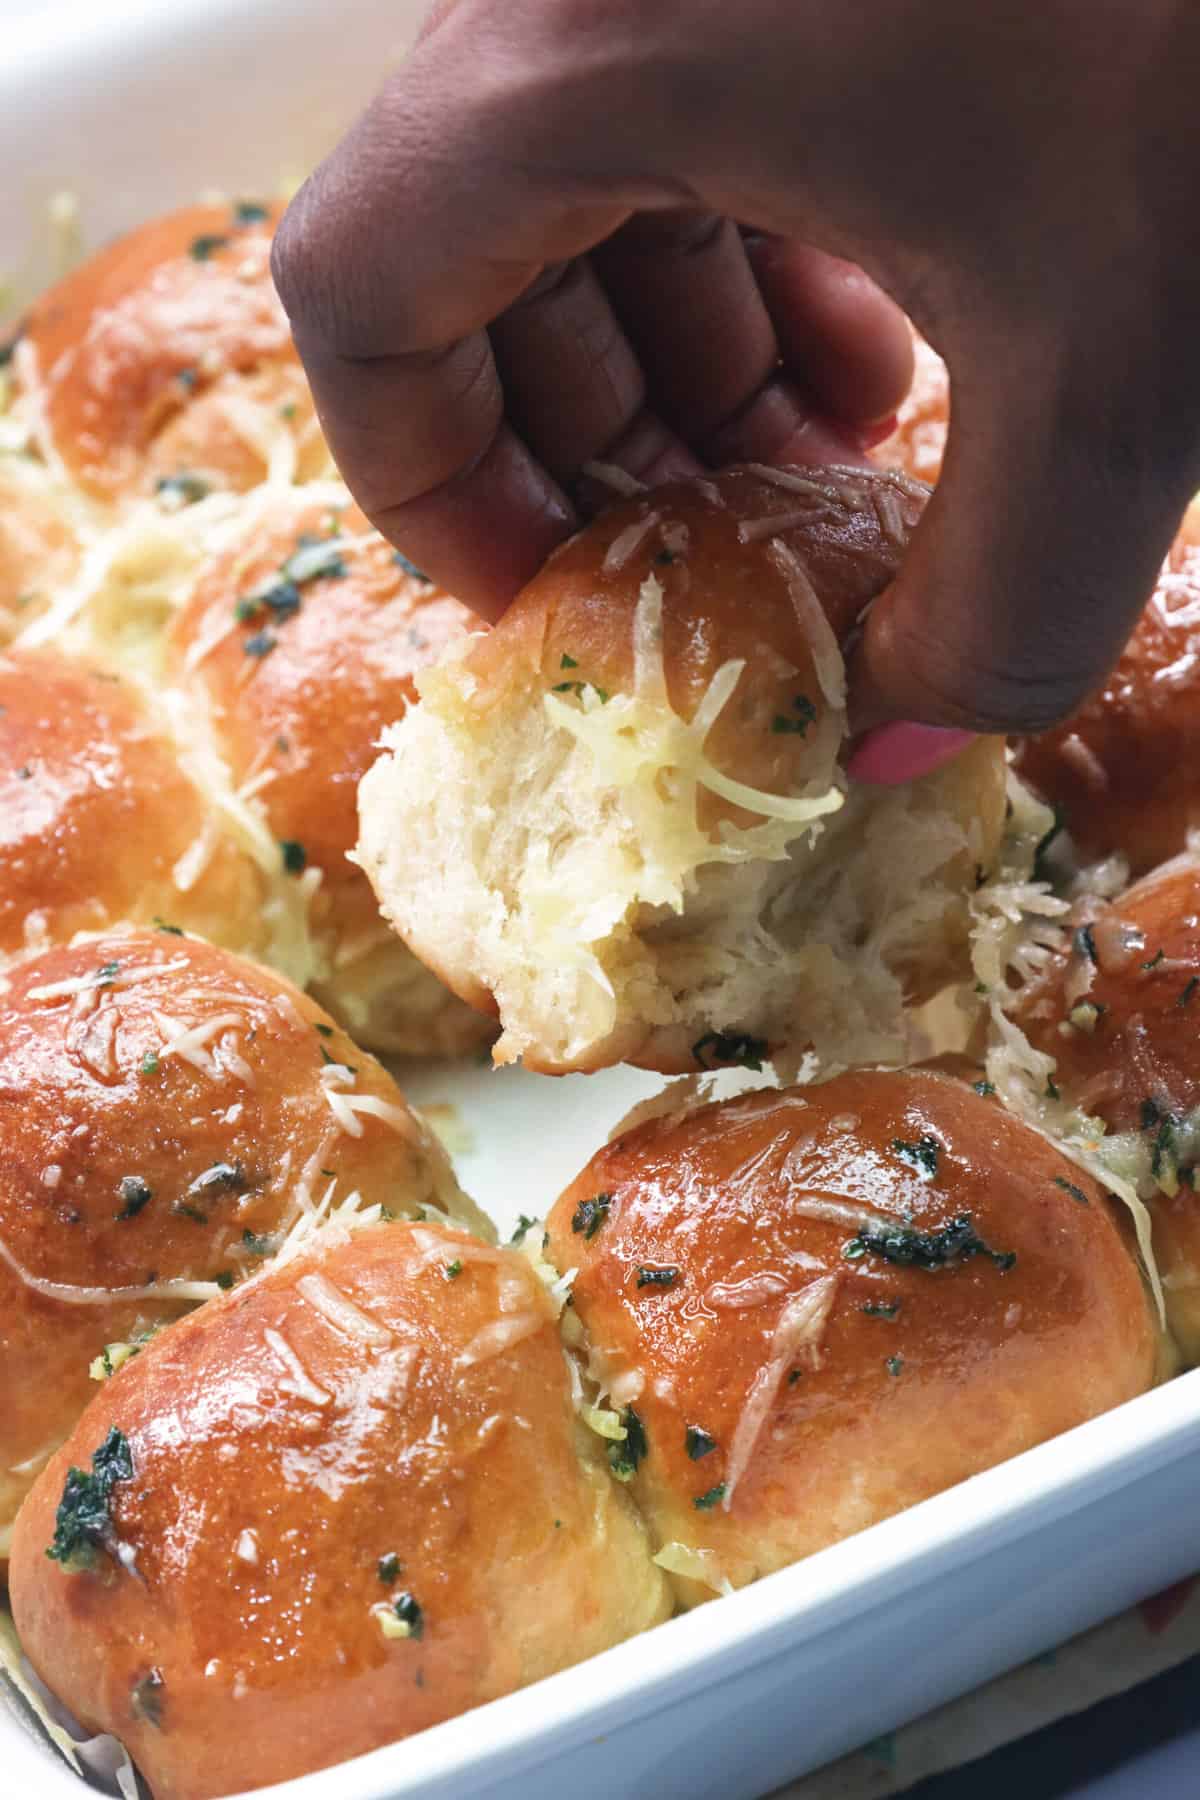 Enjoy a garlic bread roll that pulls you apart